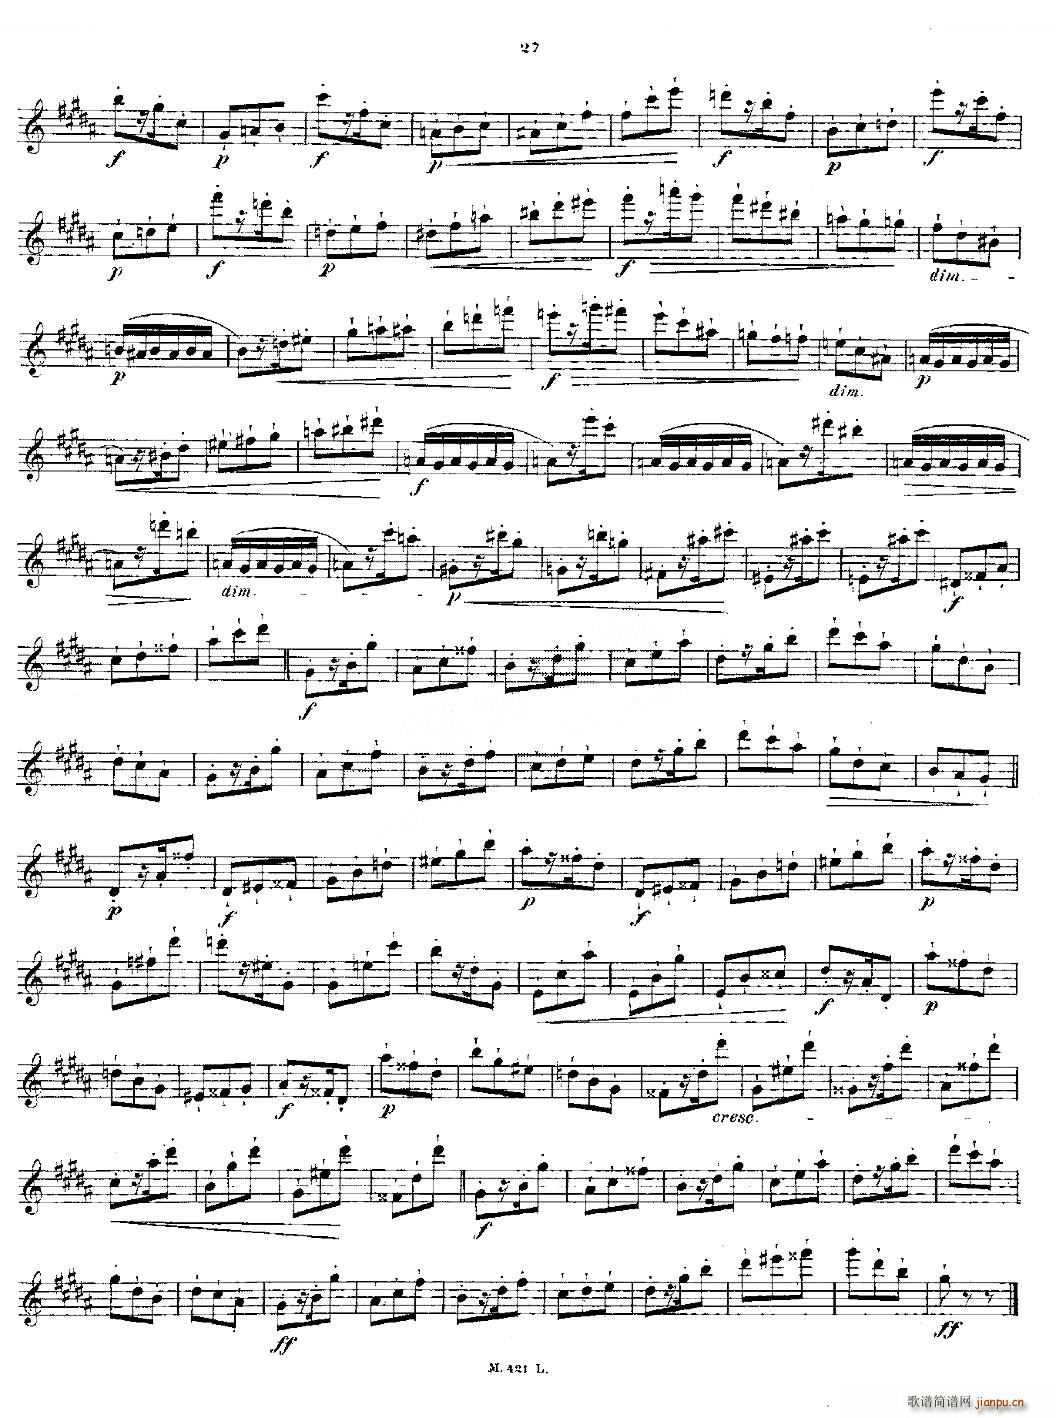 24首长笛练习曲 Op 15 之11 15 铜管(笛箫谱)1